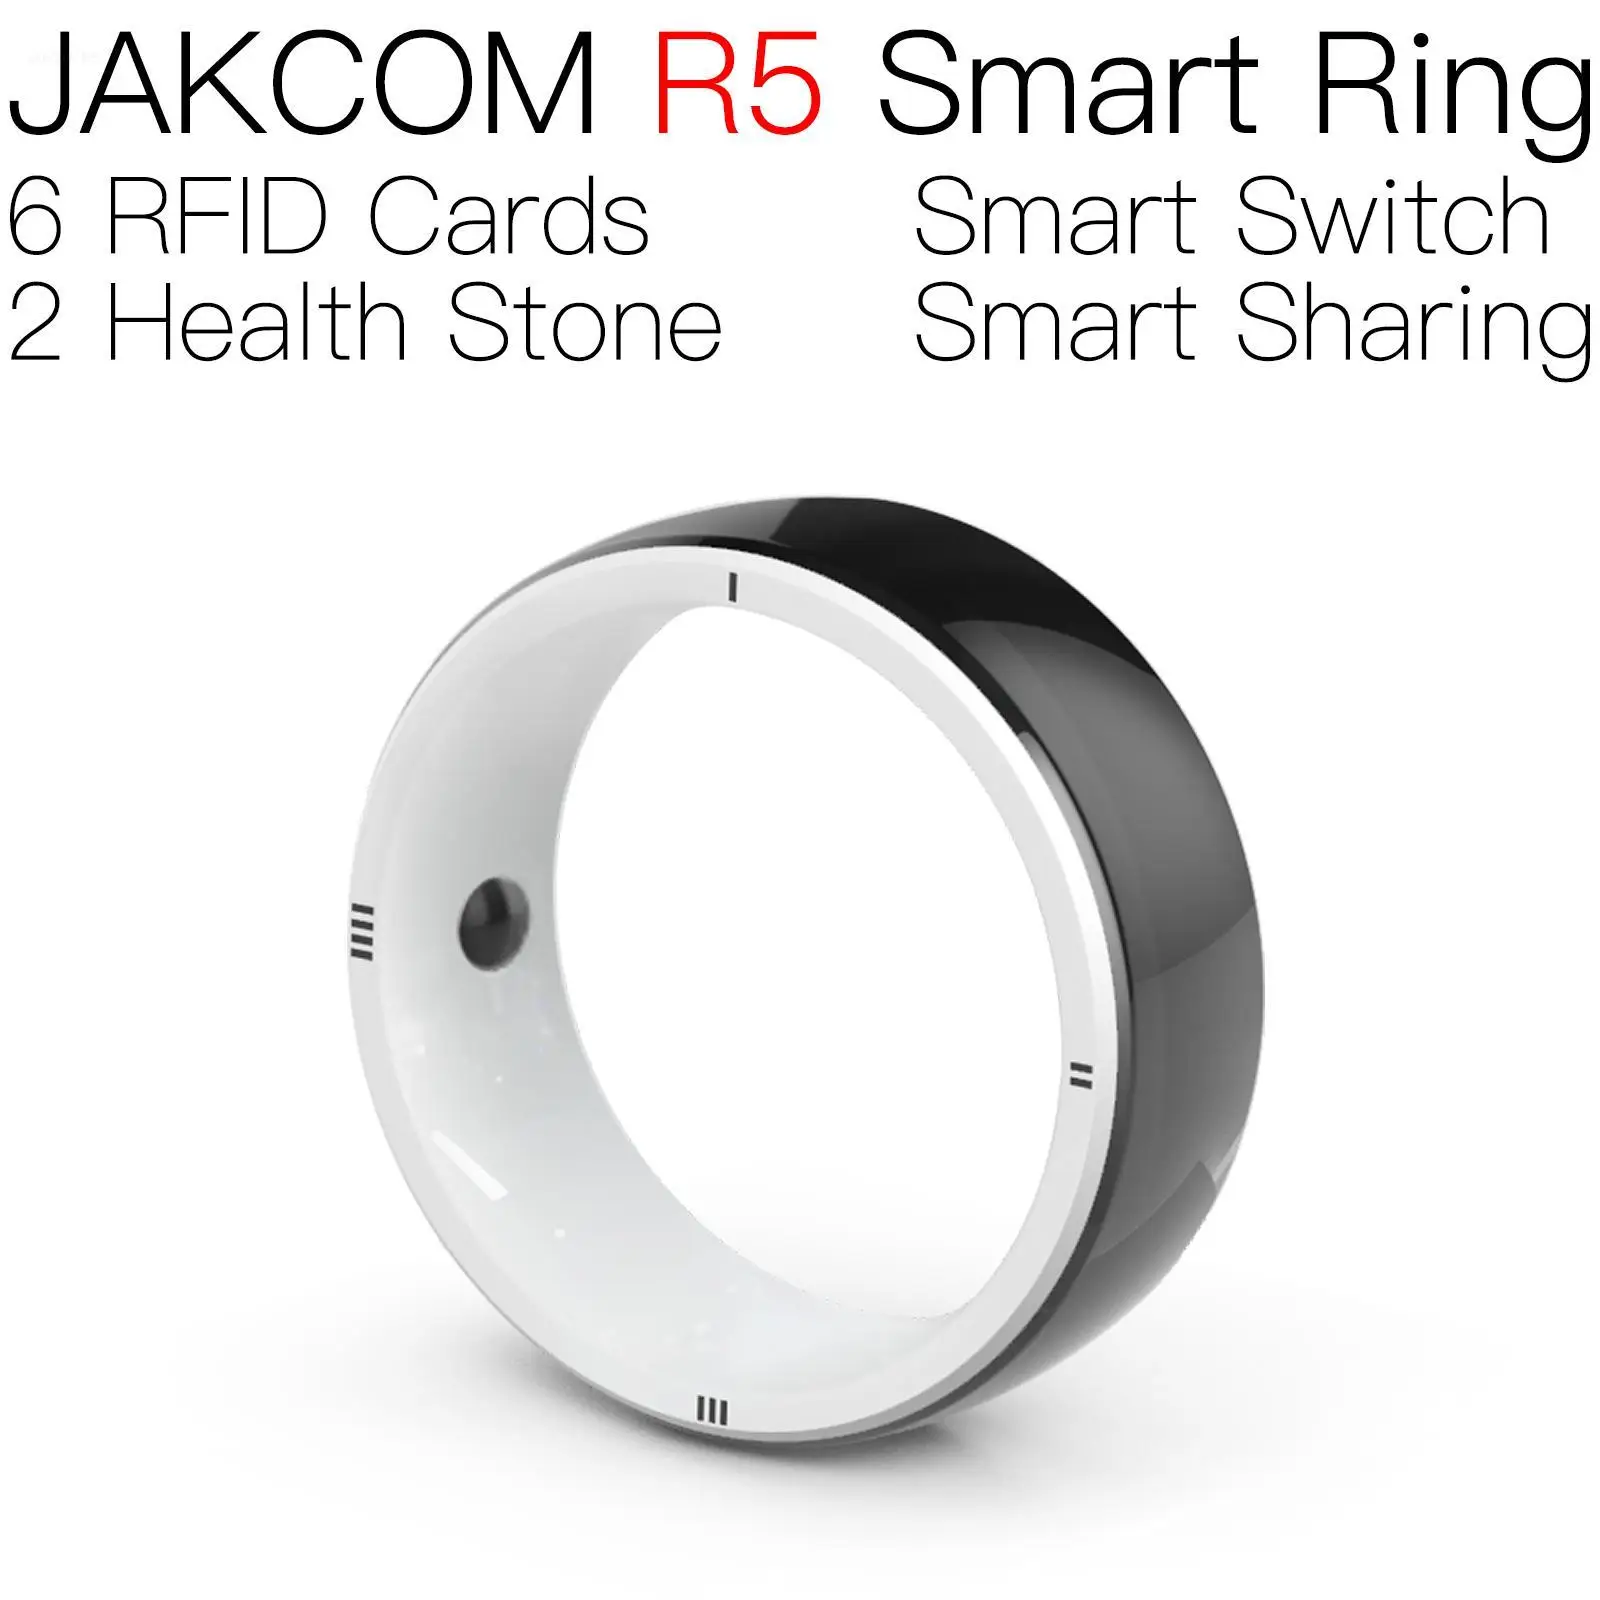 

Умное кольцо JAKCOM R5, подходящее к rfid-карте, печатный струйный микрочип, petfeeder, Бразилия, промышленный uhf-ридер, быстрое впрыскивание